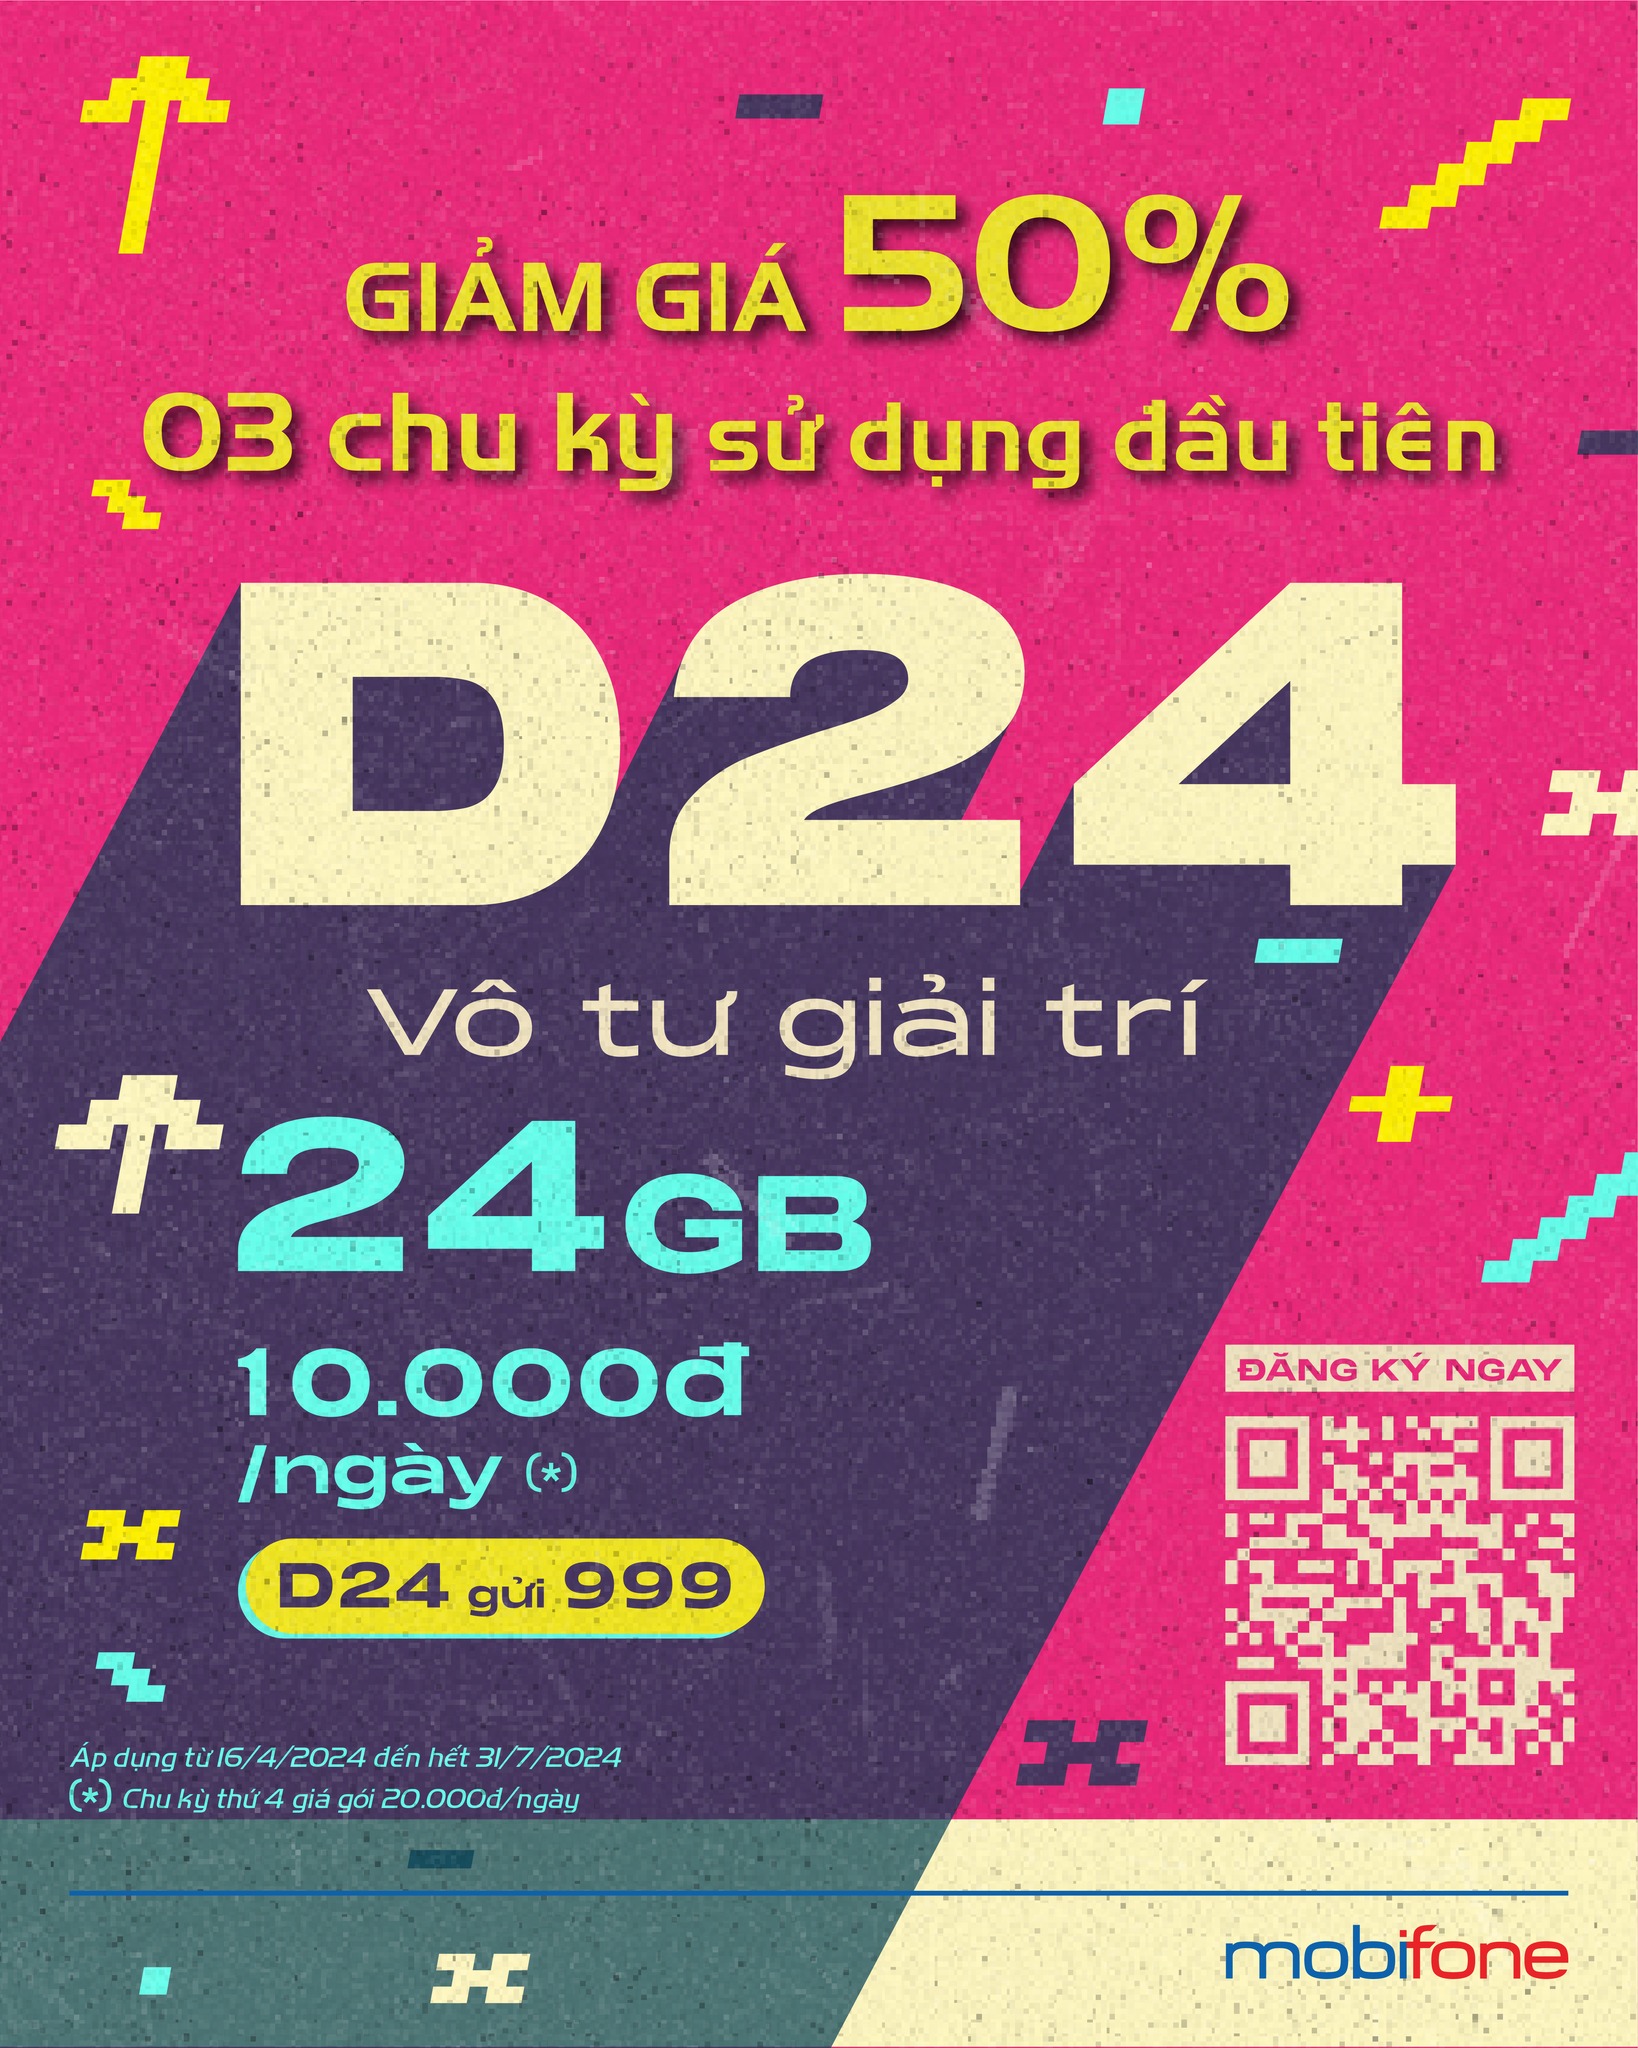 Toàn quốc - Mobifone tung deal giảm 50% giá gói cước ngày d24 Giam-gia-D24